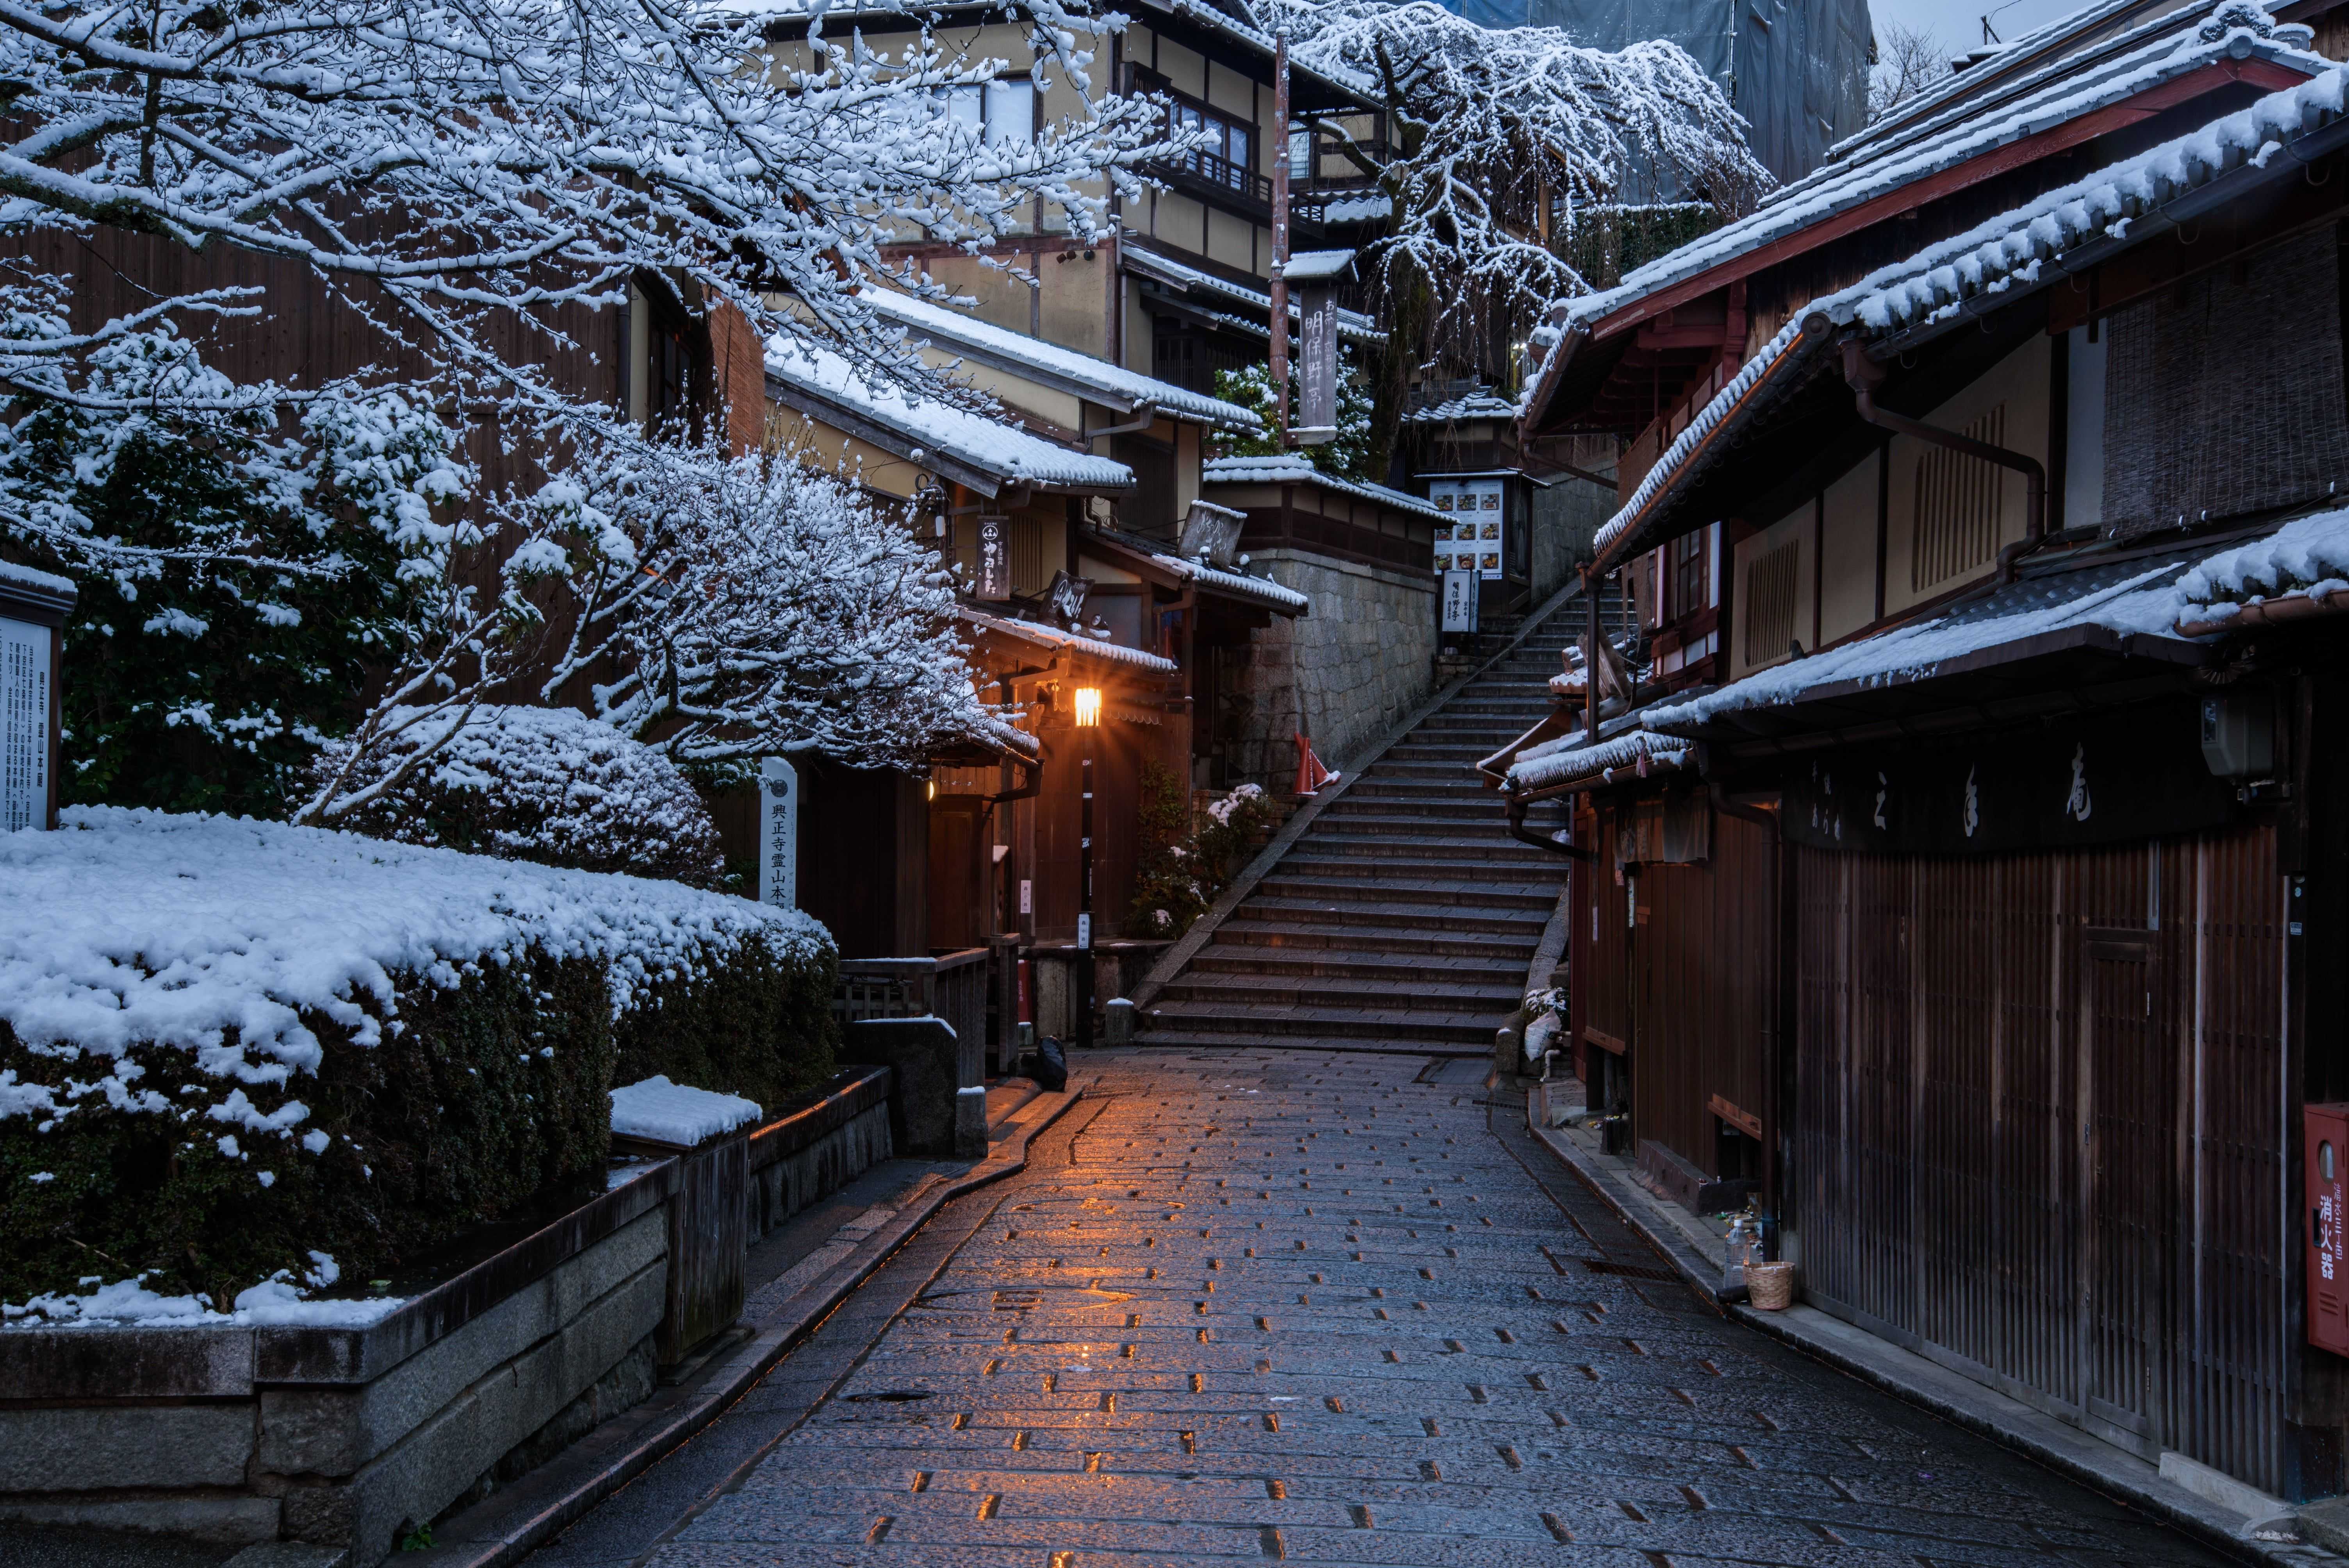 Климат и тур-сезоны в японии - когда лучше приезжать